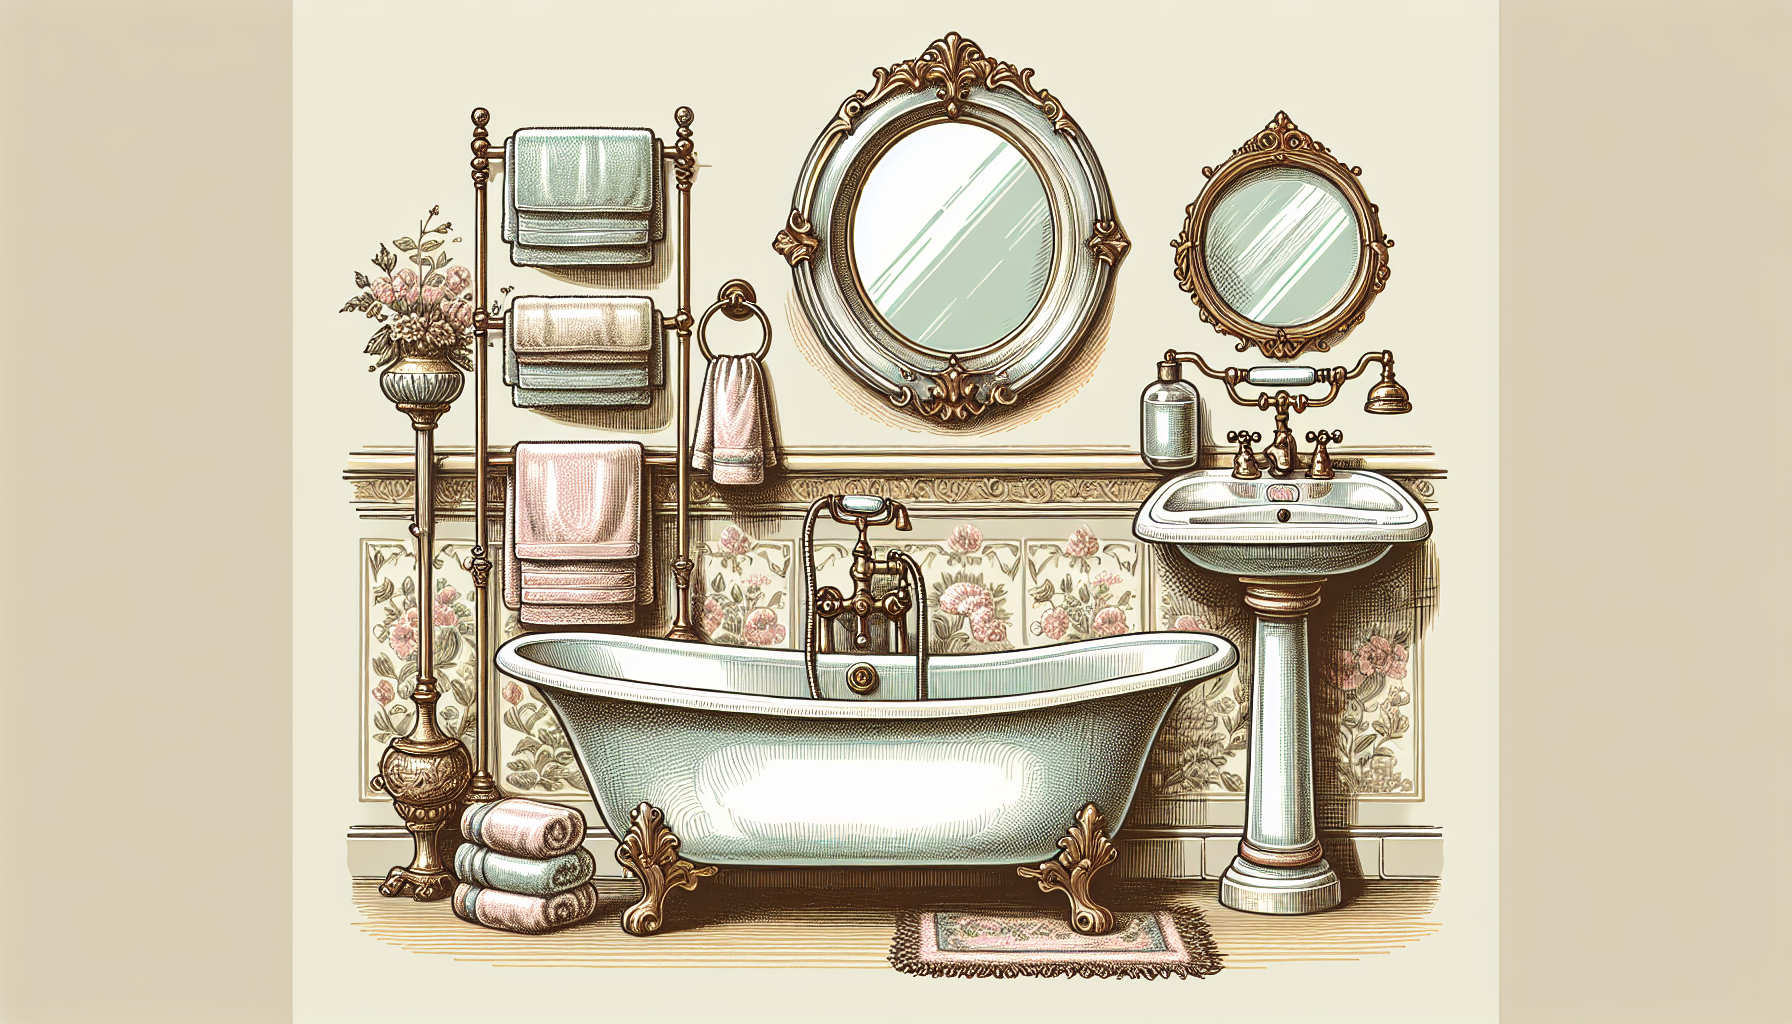 Eine Illustration von Retro-Badezimmerzubehör im eleganten Stil